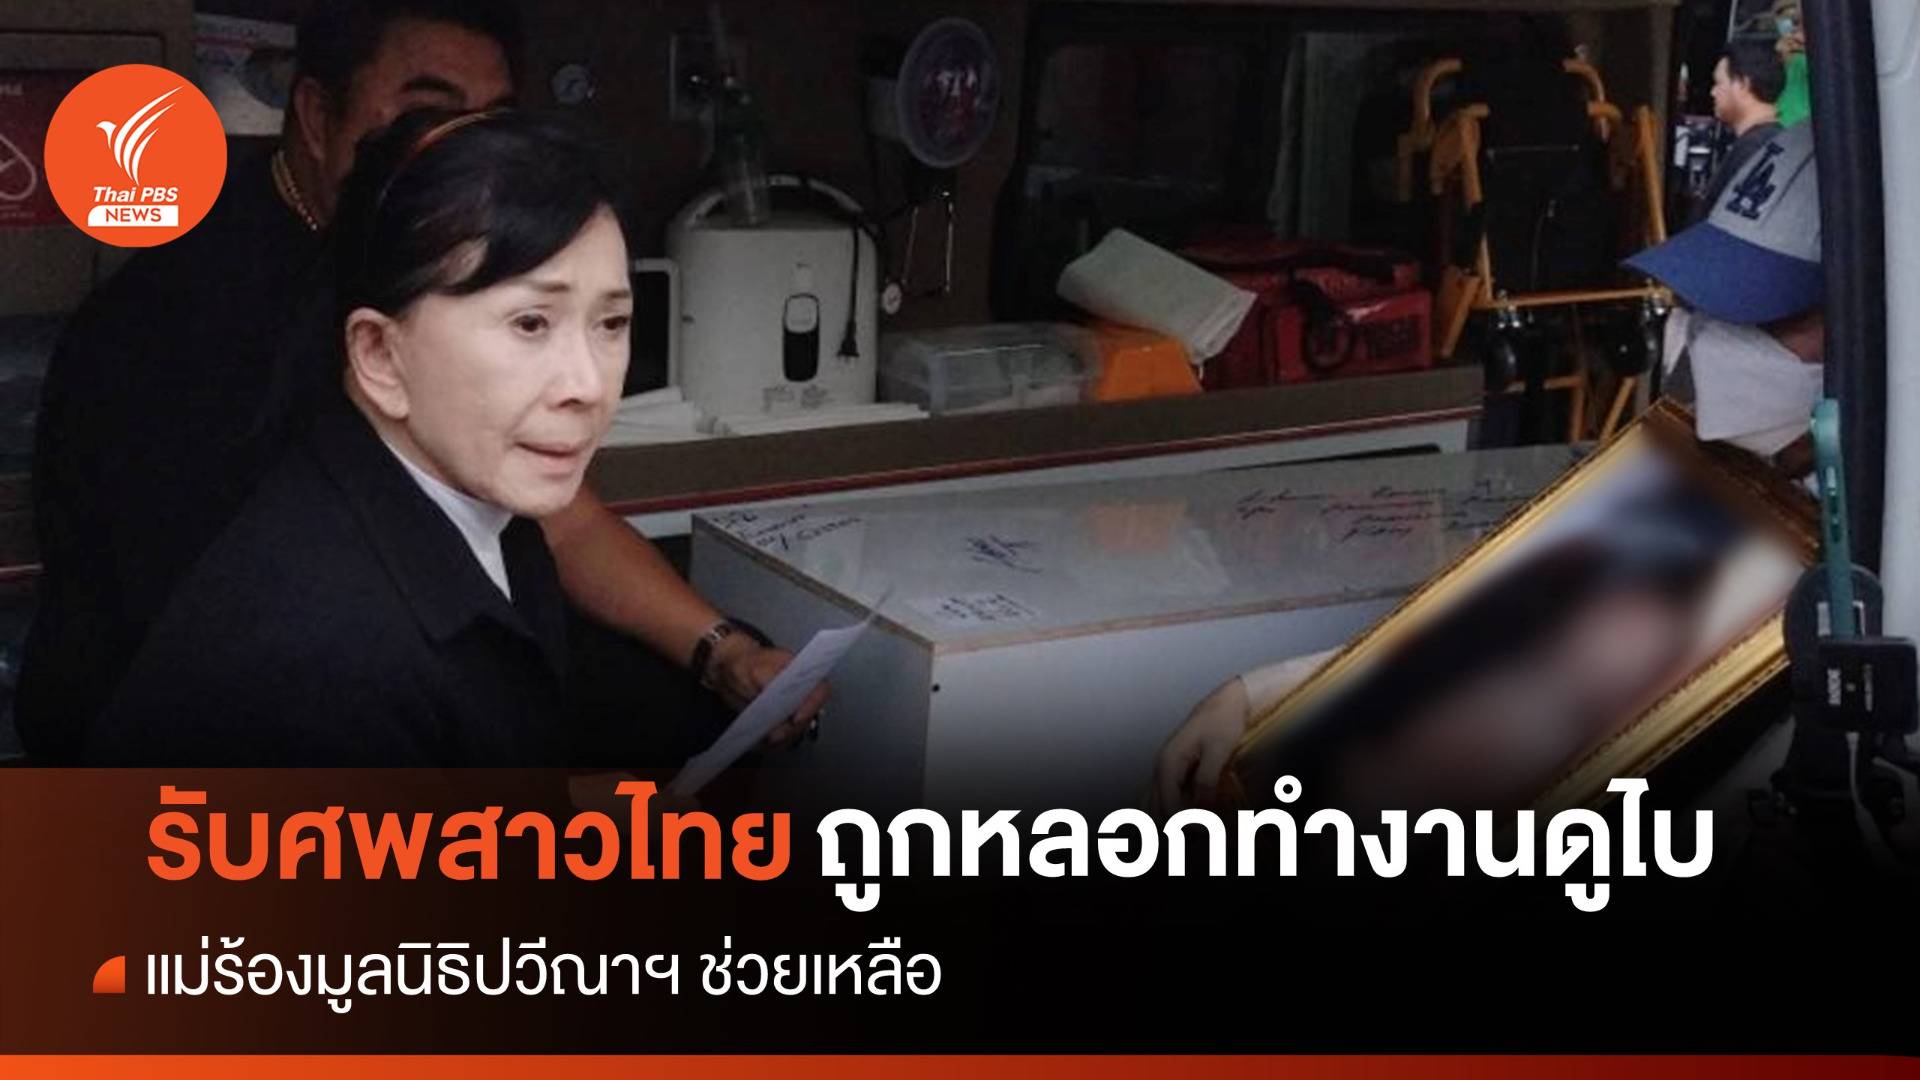 แม่ร้องมูลนิธิปวีณาฯ ช่วย "สาวไทย" ไปดูไบเสียชีวิตปริศนา